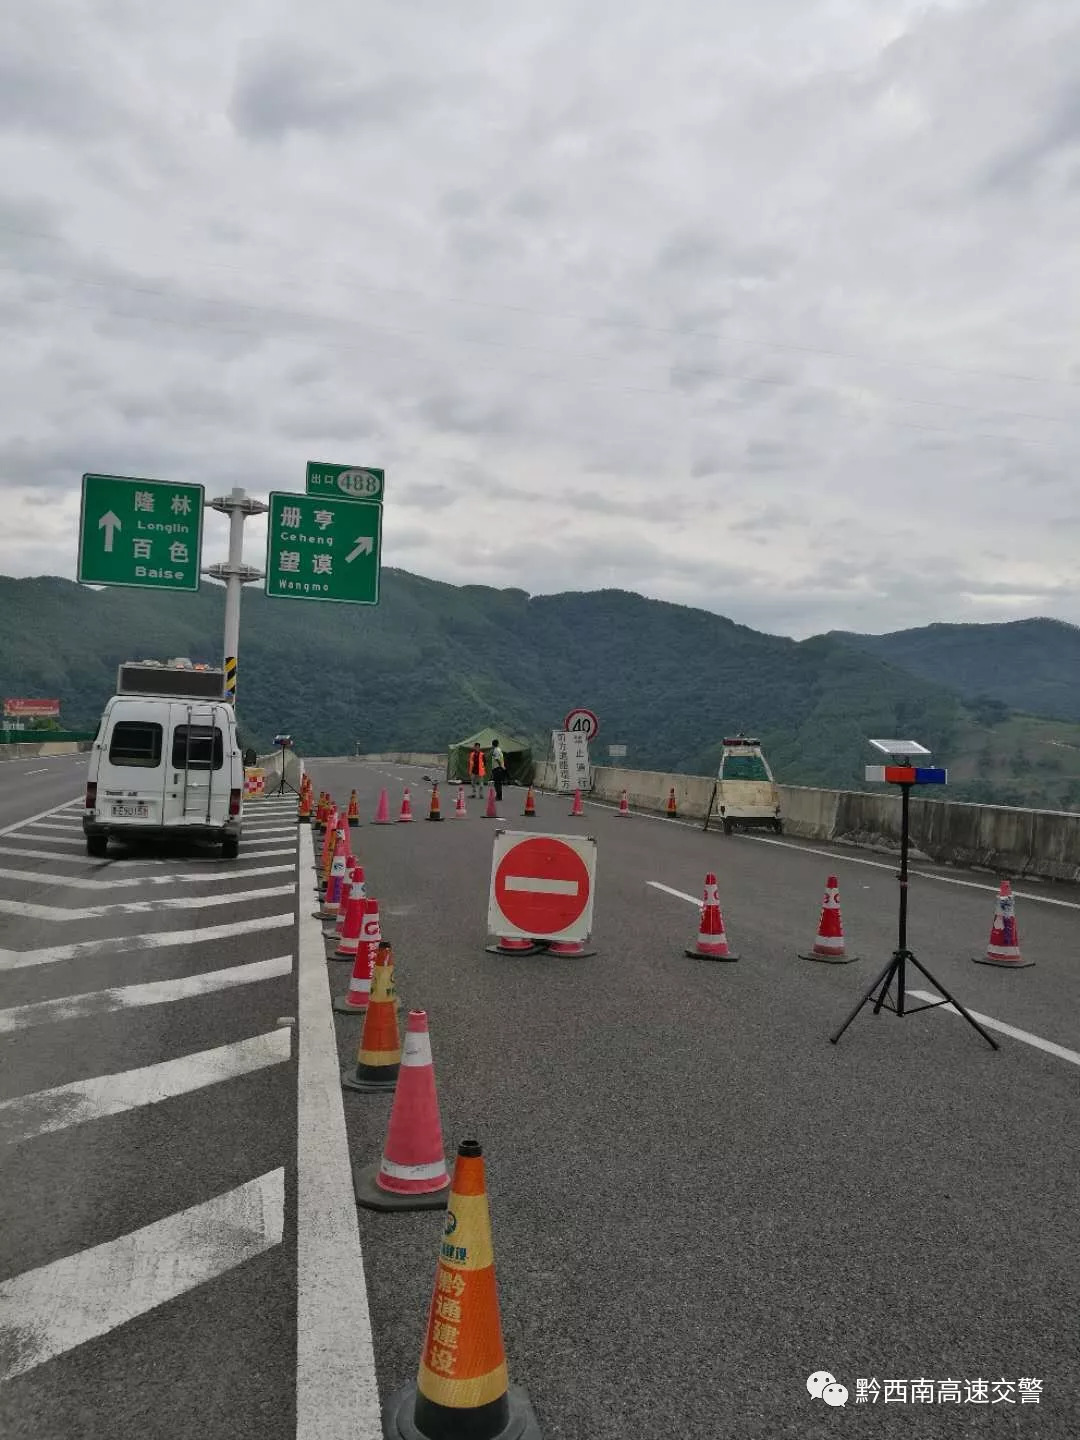 贵州省s62余安高速(望安段)尾燕山隧道至g78汕昆高速巧马枢纽互通段因